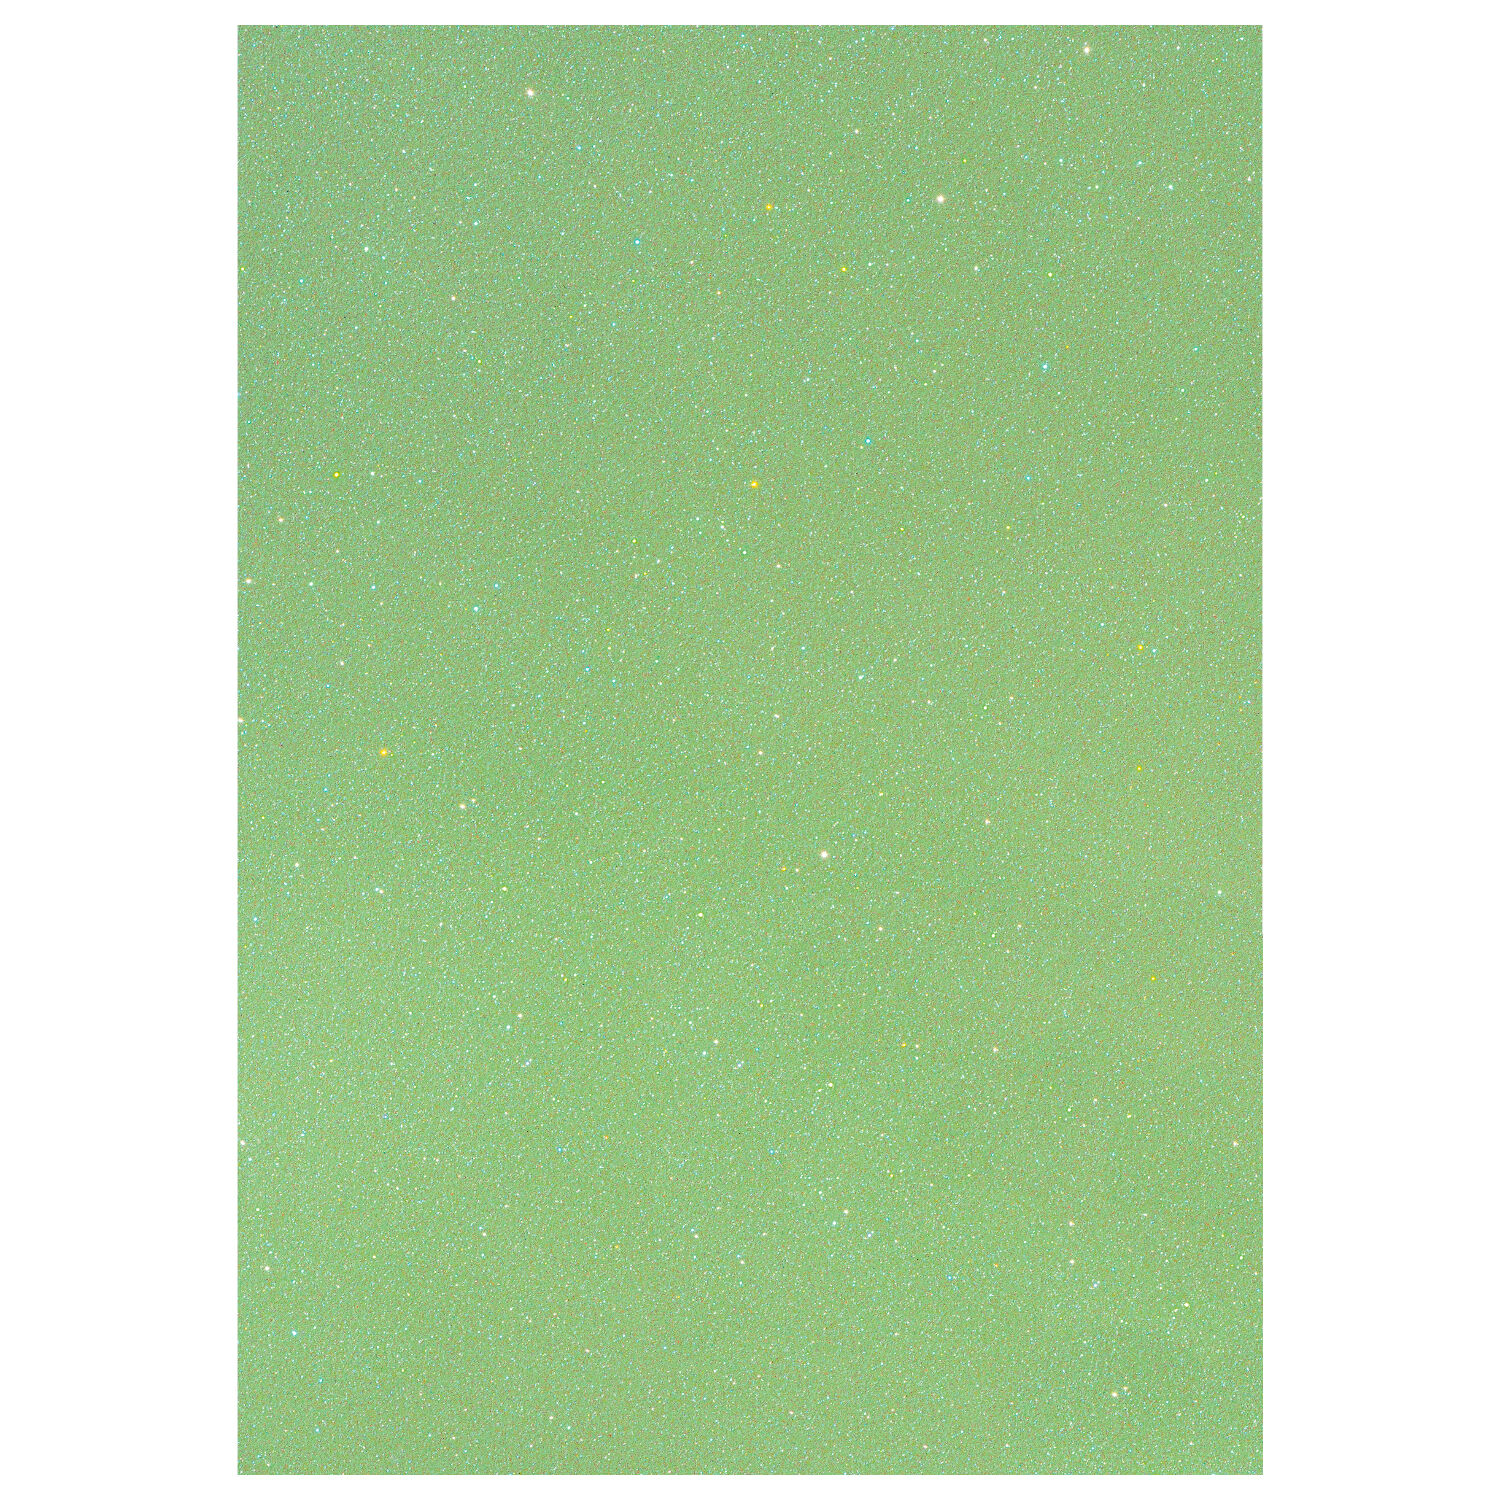 NEU Glitter-Karton, 200 g/qm, einseitig mit Glitzer, DIN A4, Hellgrn Irisierend